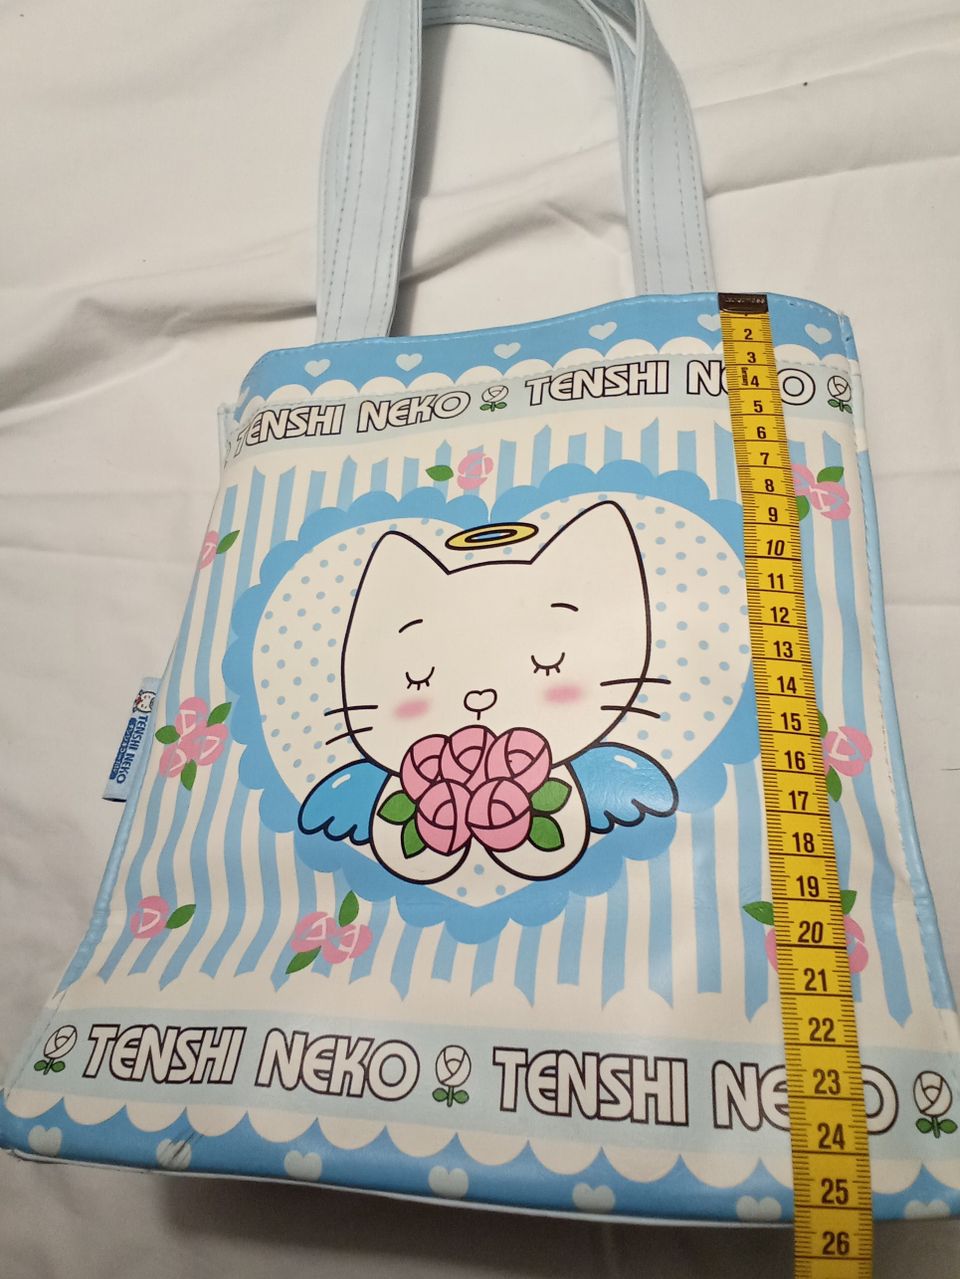 2 Tenshi Neko pikkulaukkua, Manga, anime